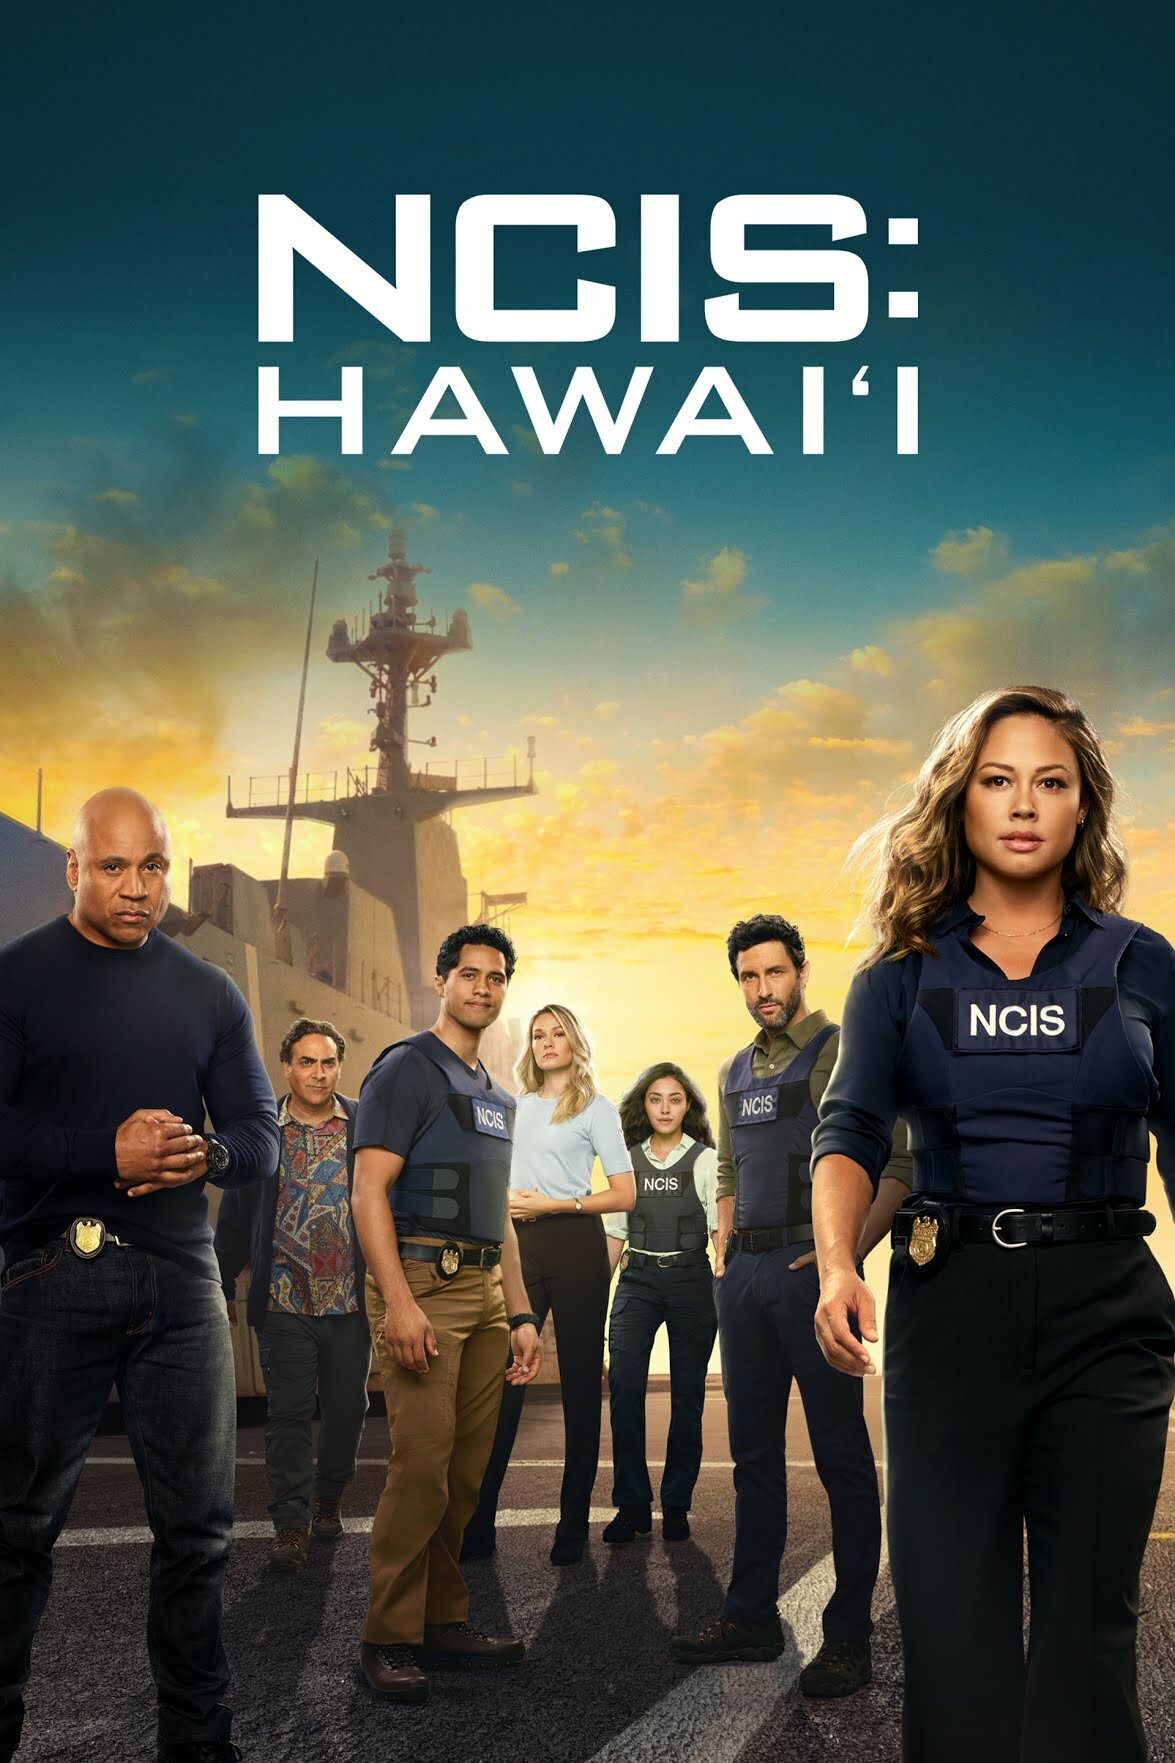 NCIS Hawaii S03E04 720p HDTV x264-SYNCOPY